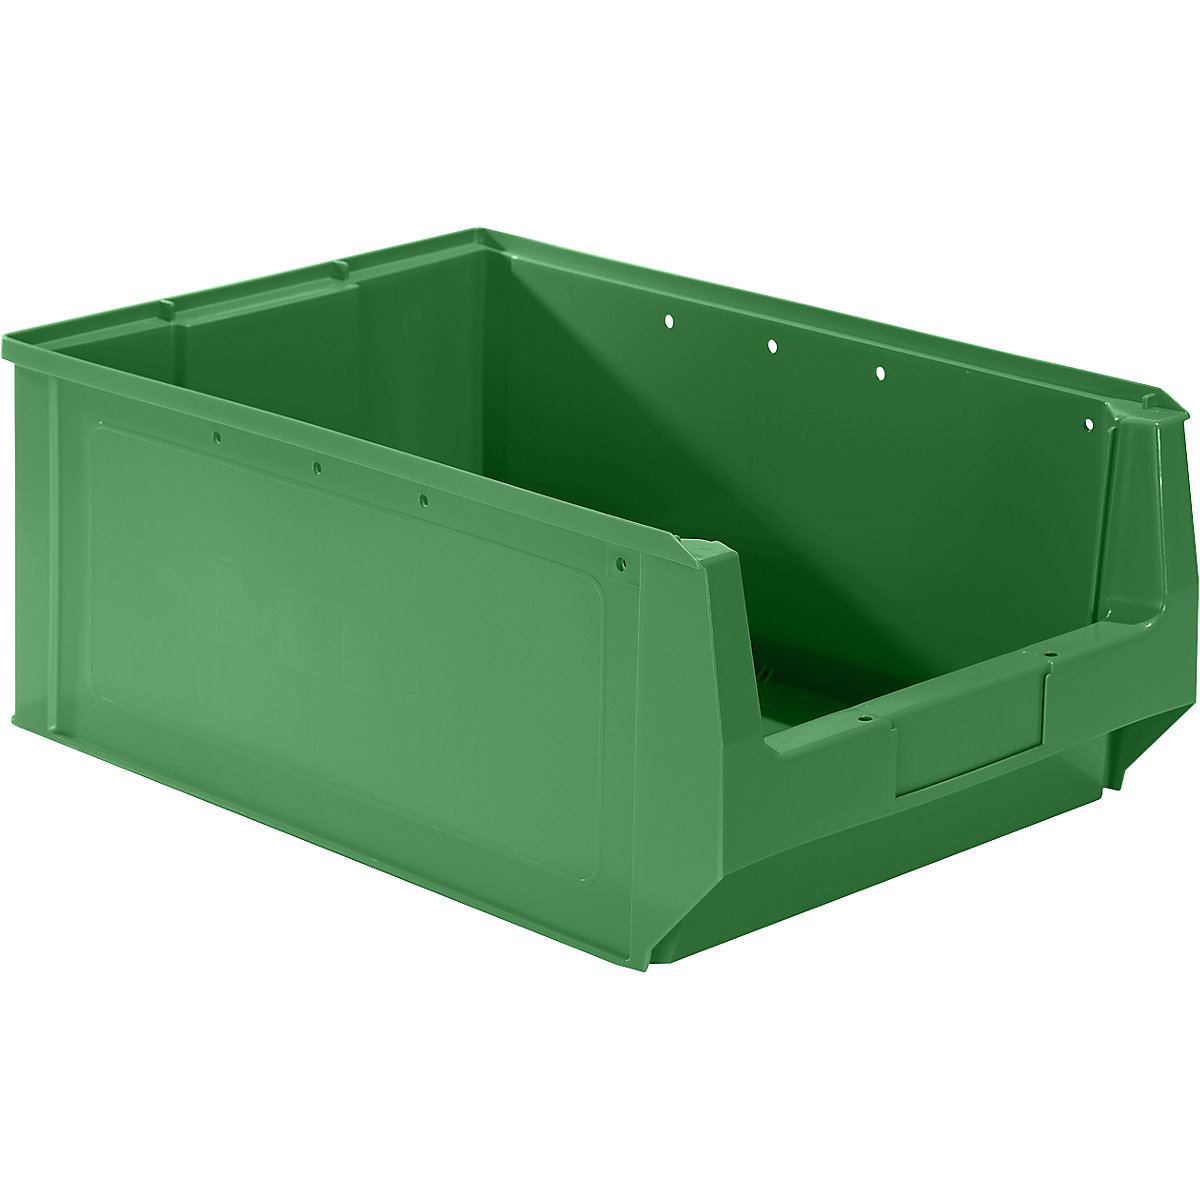 Sichtlagerkasten aus Polyethylen mauser, LxBxH 500 x 310 x 200 mm, grün, VE 10 Stk-6